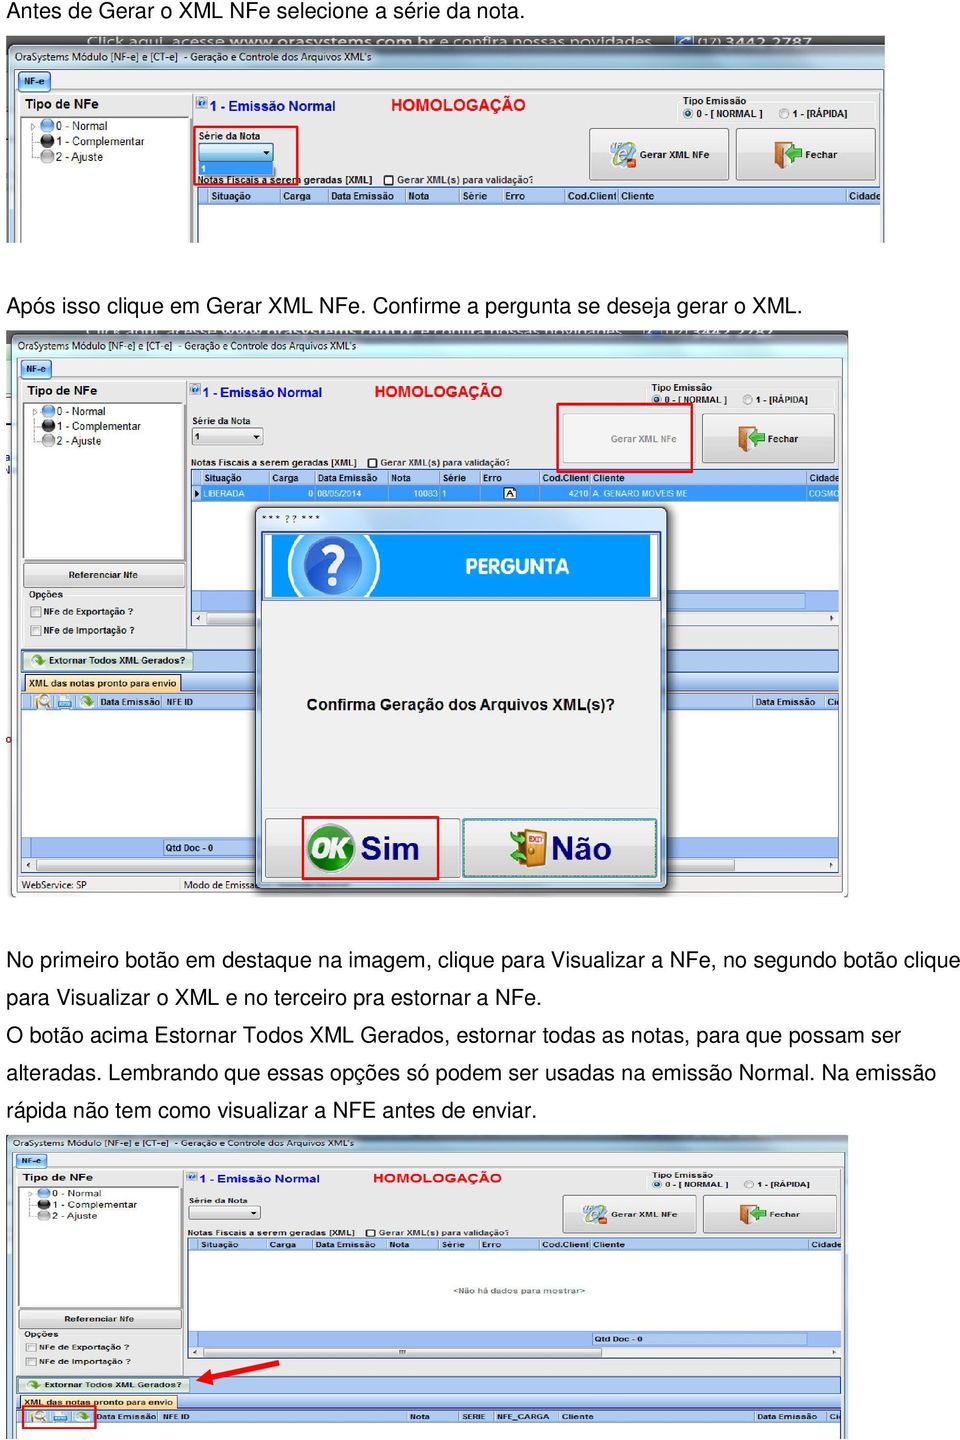 No primeiro botão em destaque na imagem, clique para Visualizar a NFe, no segundo botão clique para Visualizar o XML e no